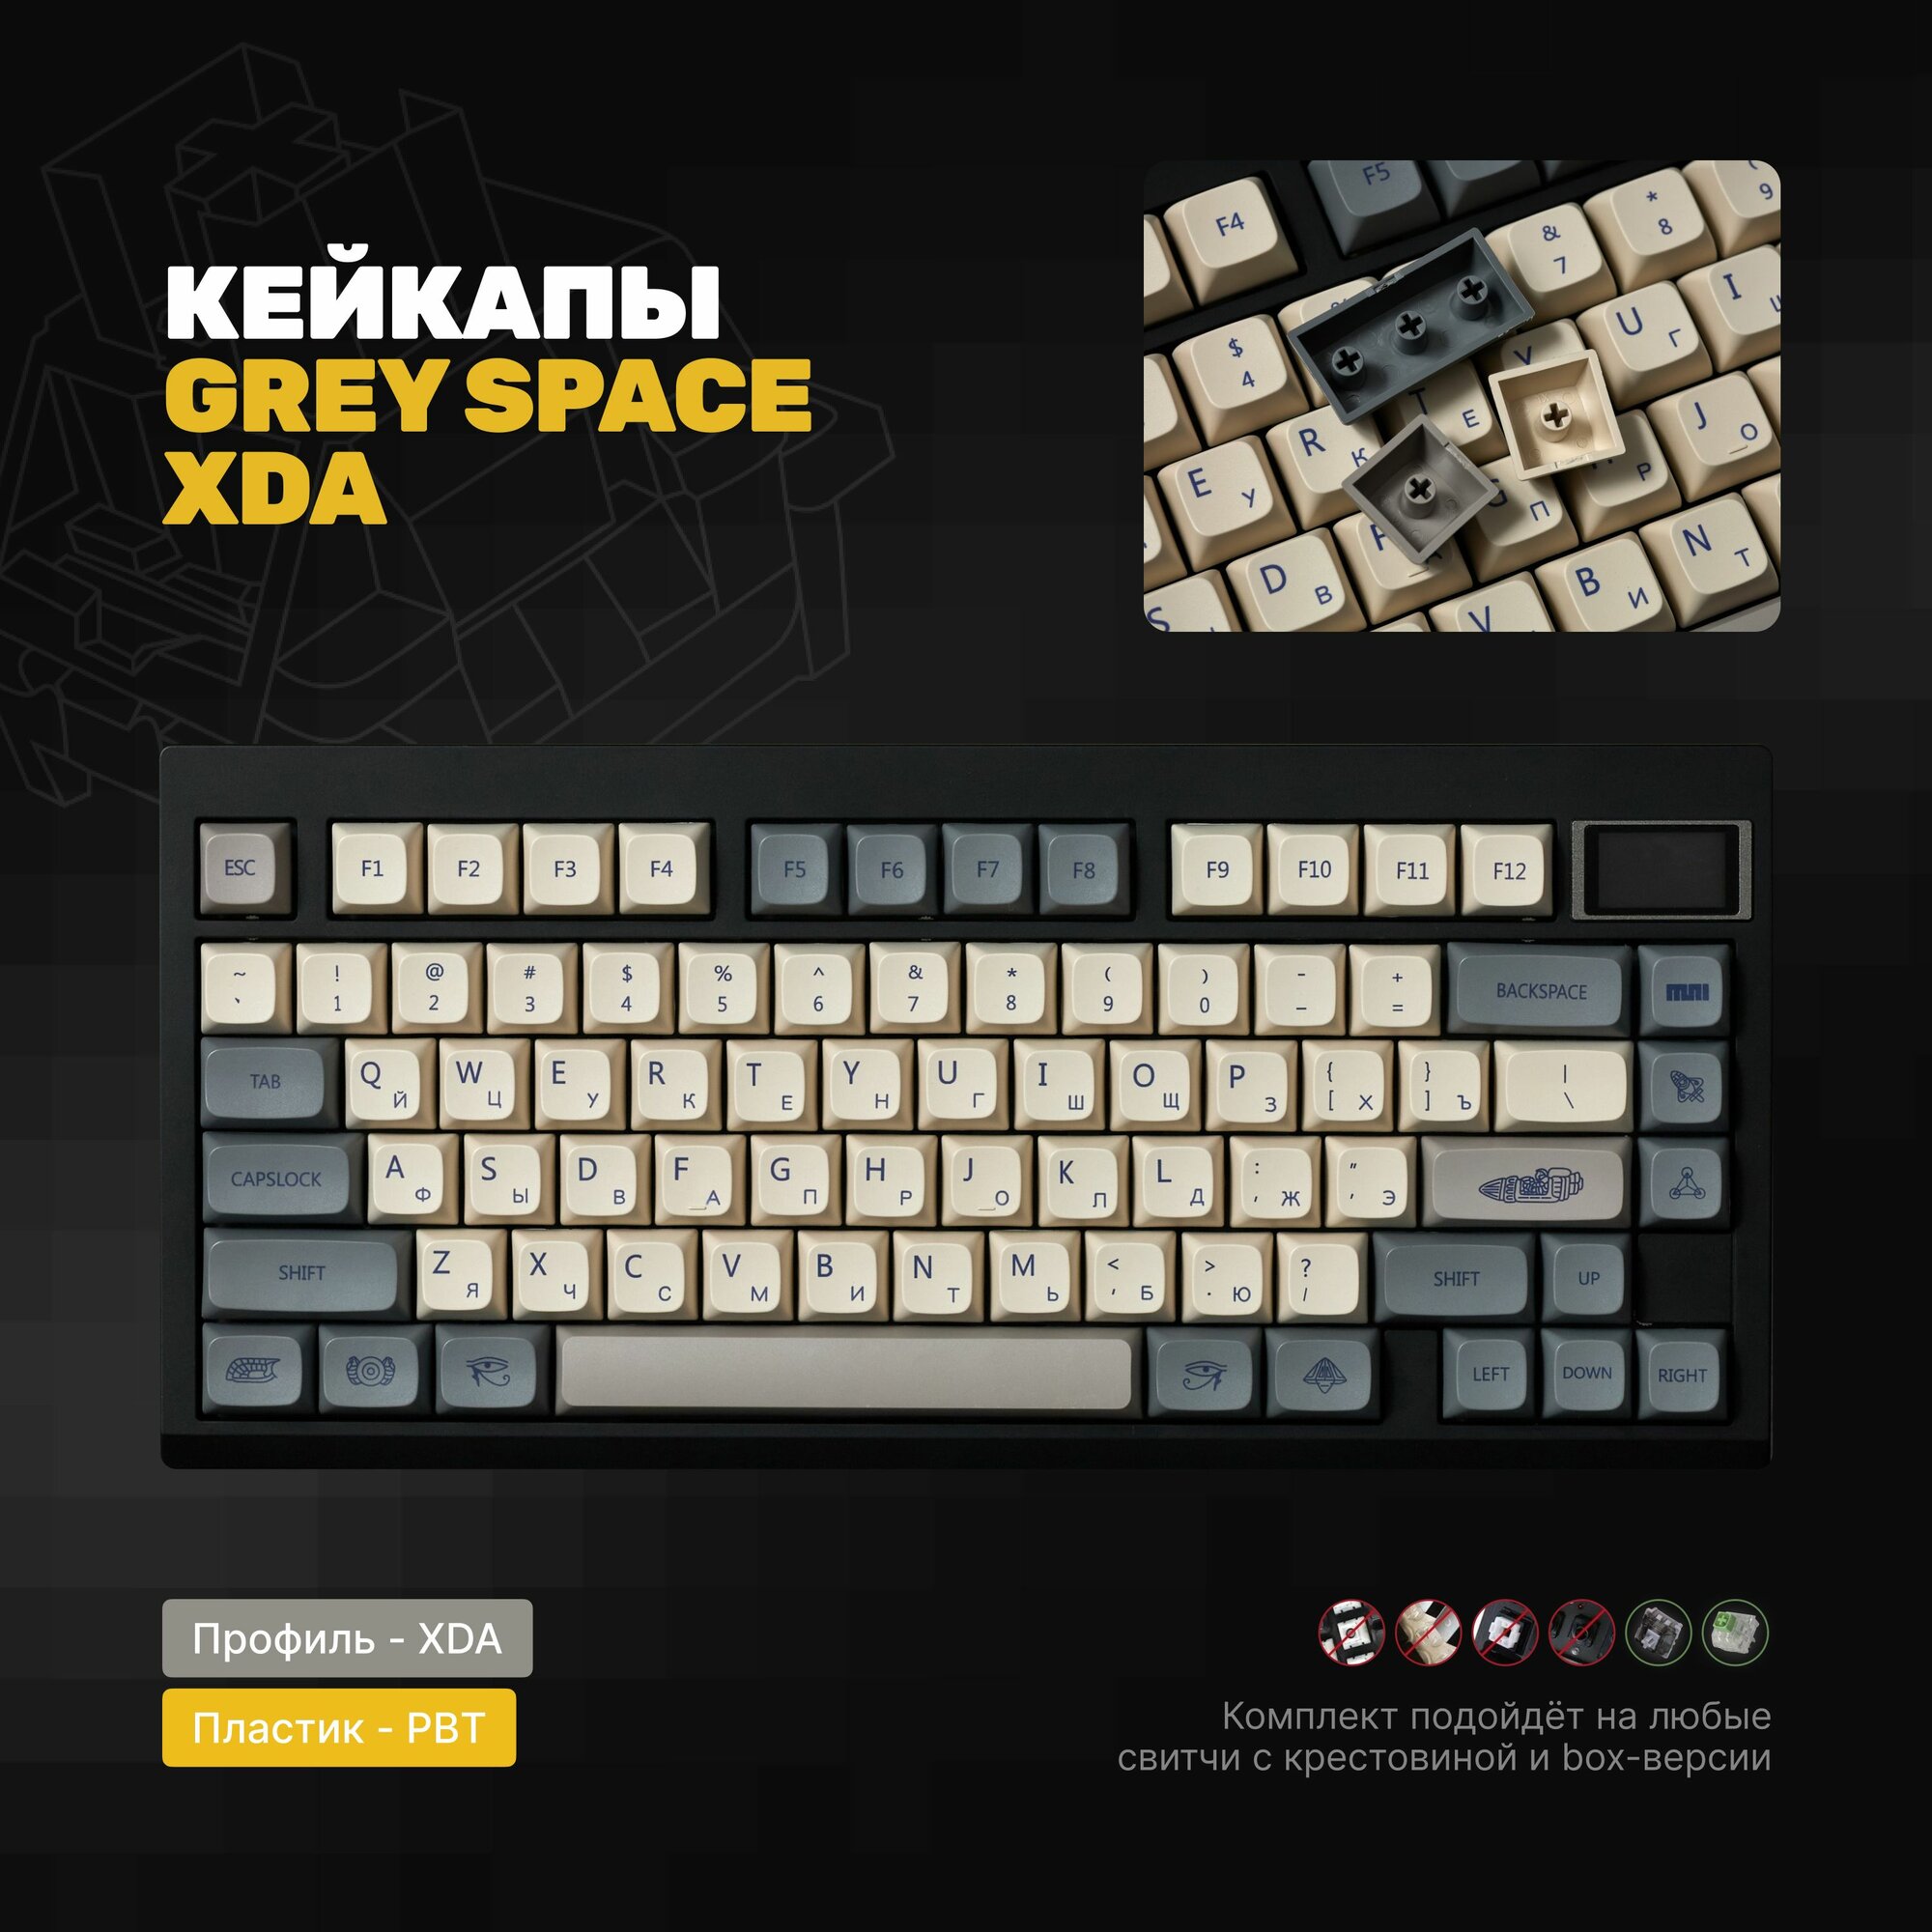 Кейкапы XDA GREY SPACE RUS для механической клавиатуры, профиль XDA, PBT пластик